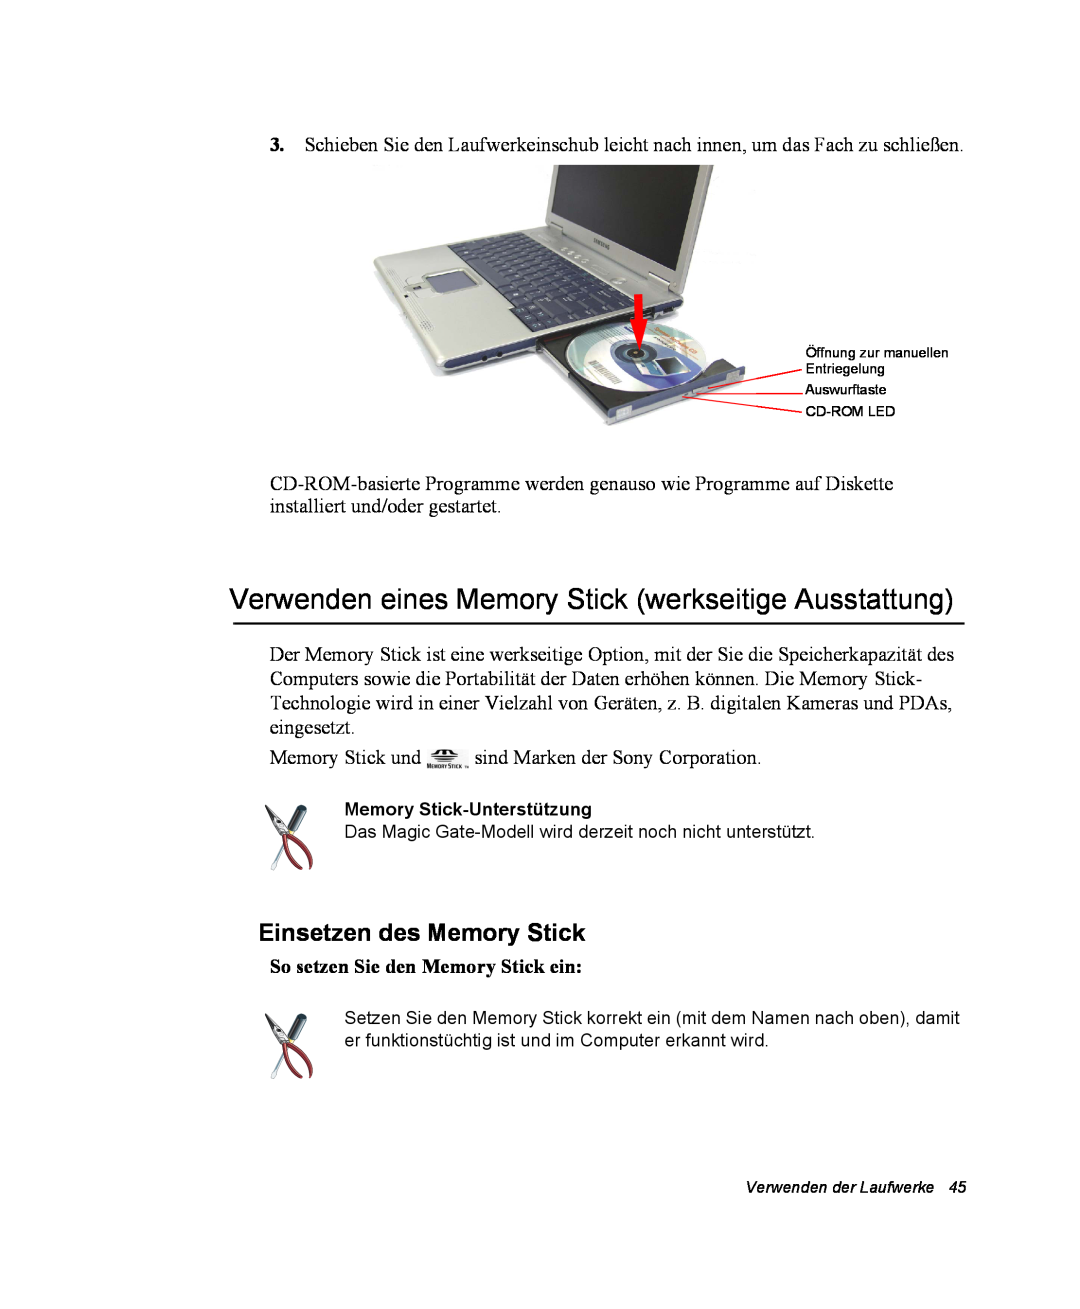 Samsung NX10PRCV01/SEG, NX10PRDV01/SEG Verwenden eines Memory Stick werkseitige Ausstattung, Einsetzen des Memory Stick 